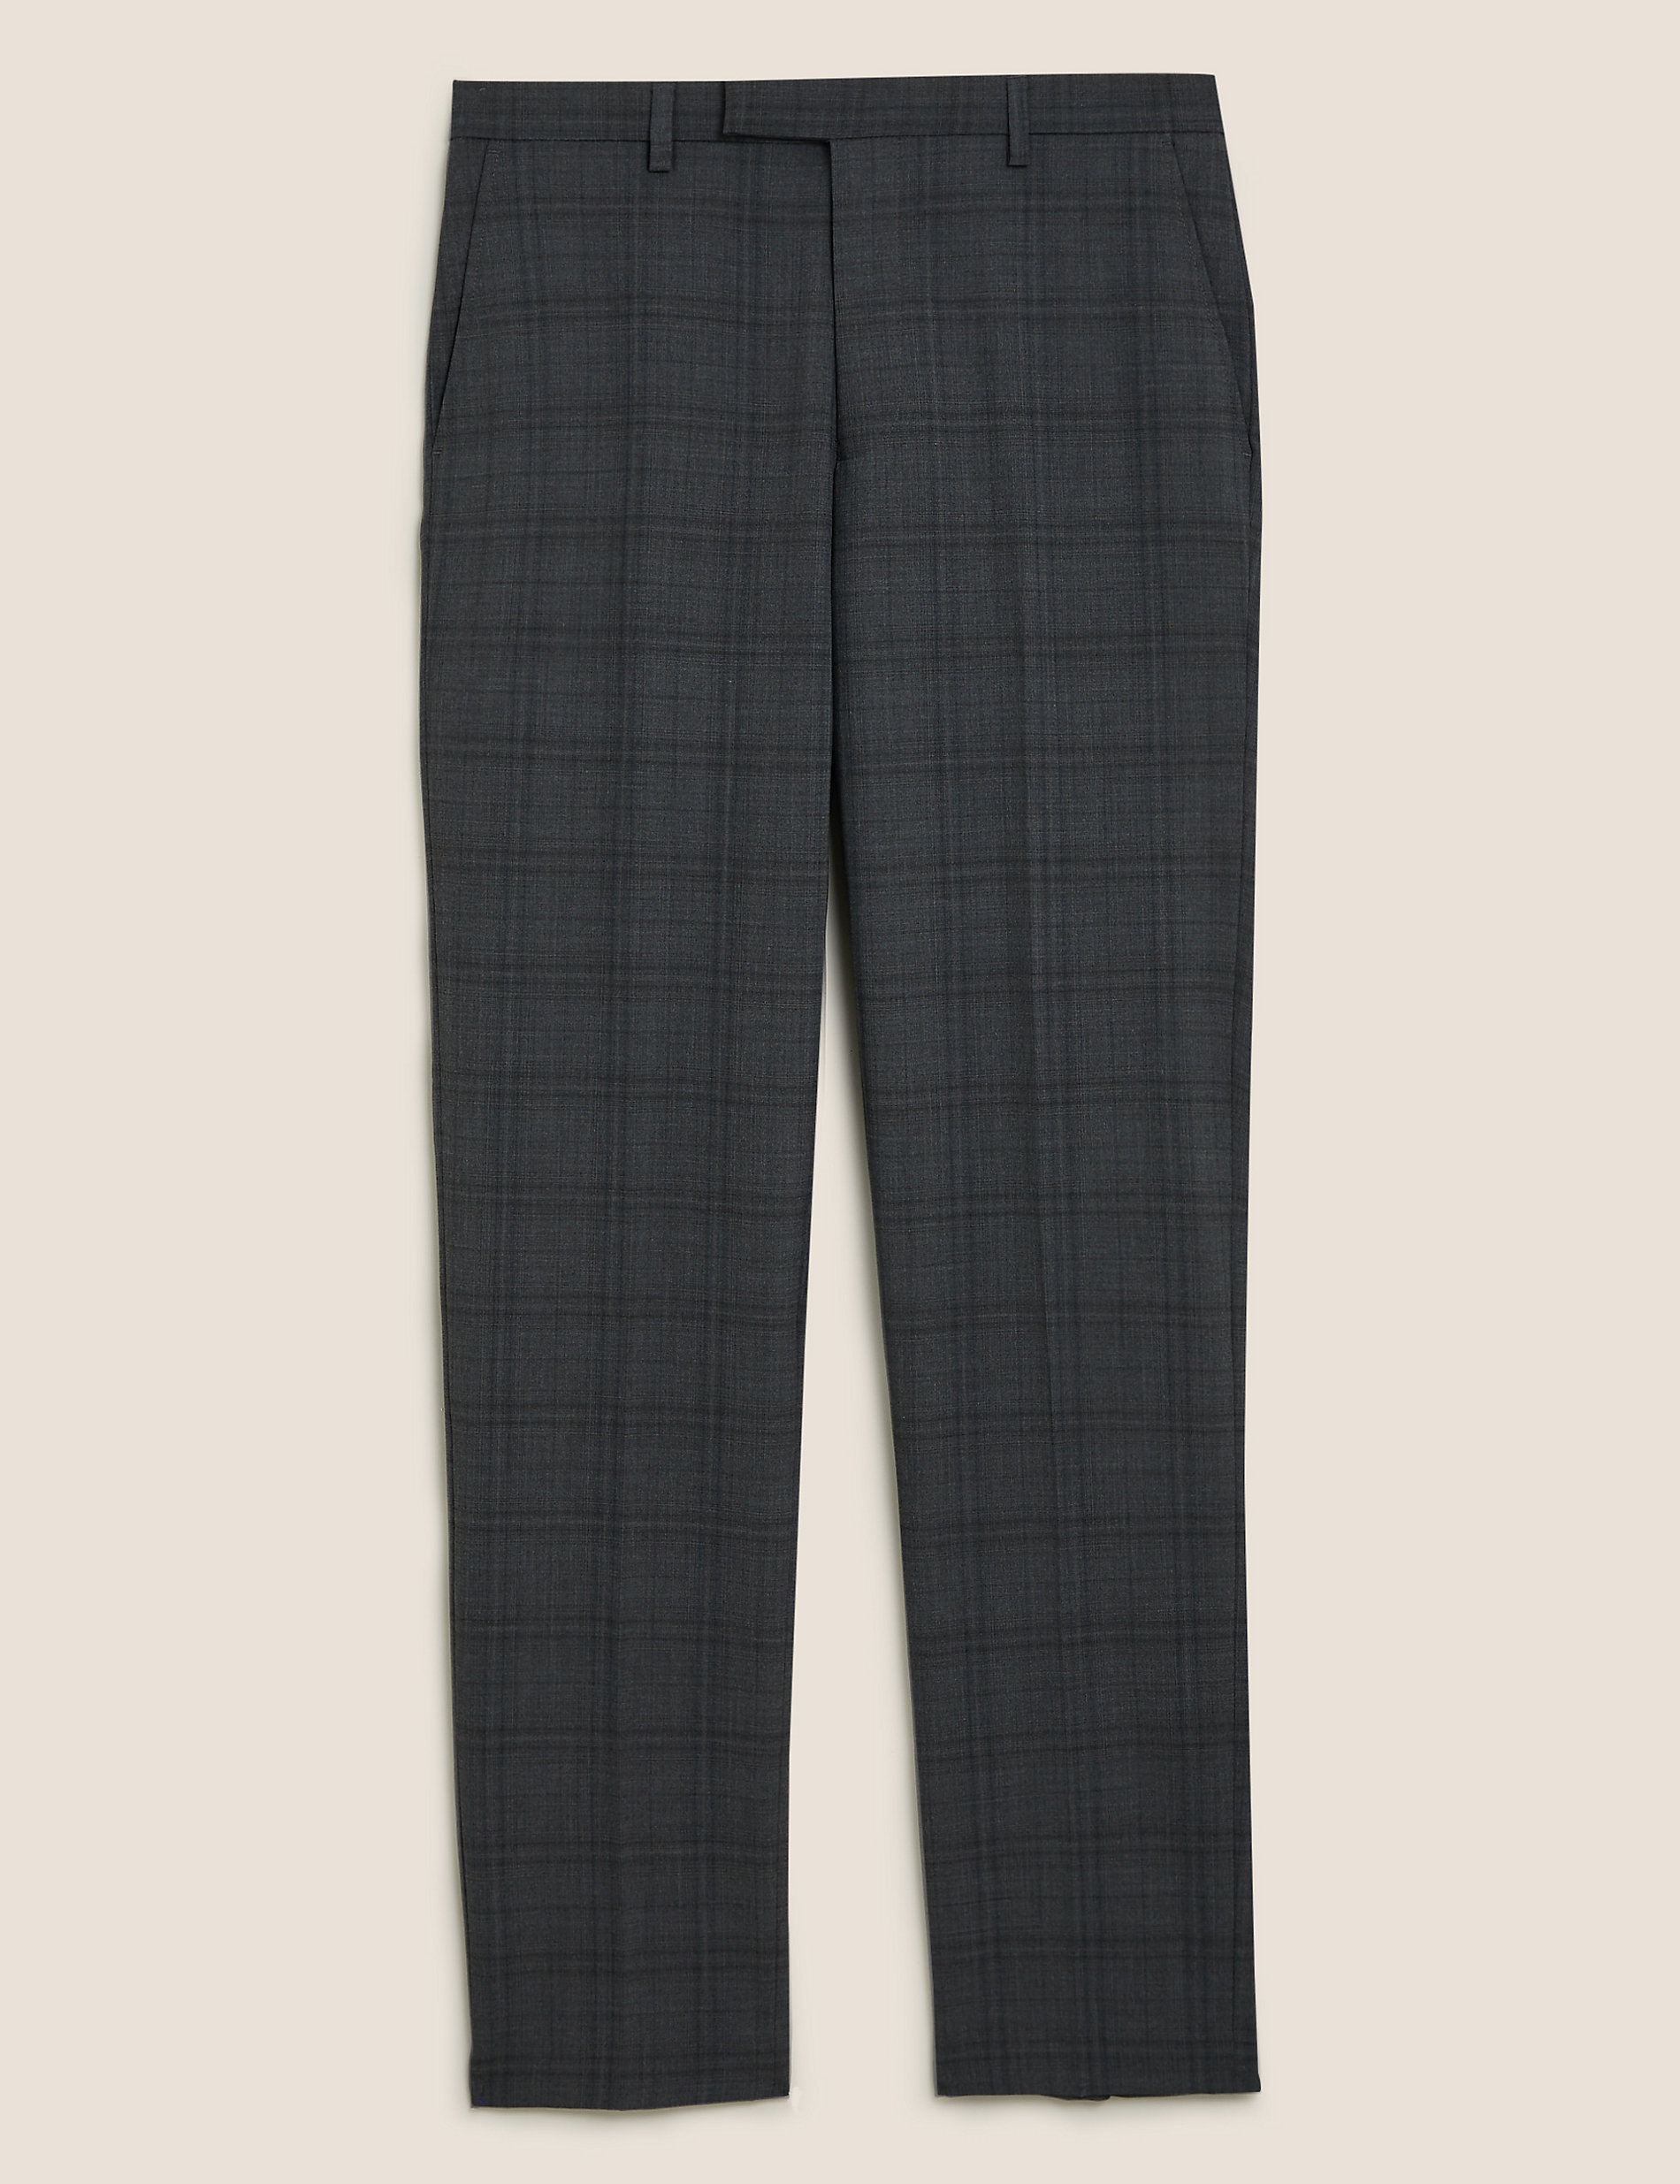 Houtskoolkleurige pantalon van wolmix met elegante snit en ruitmotief